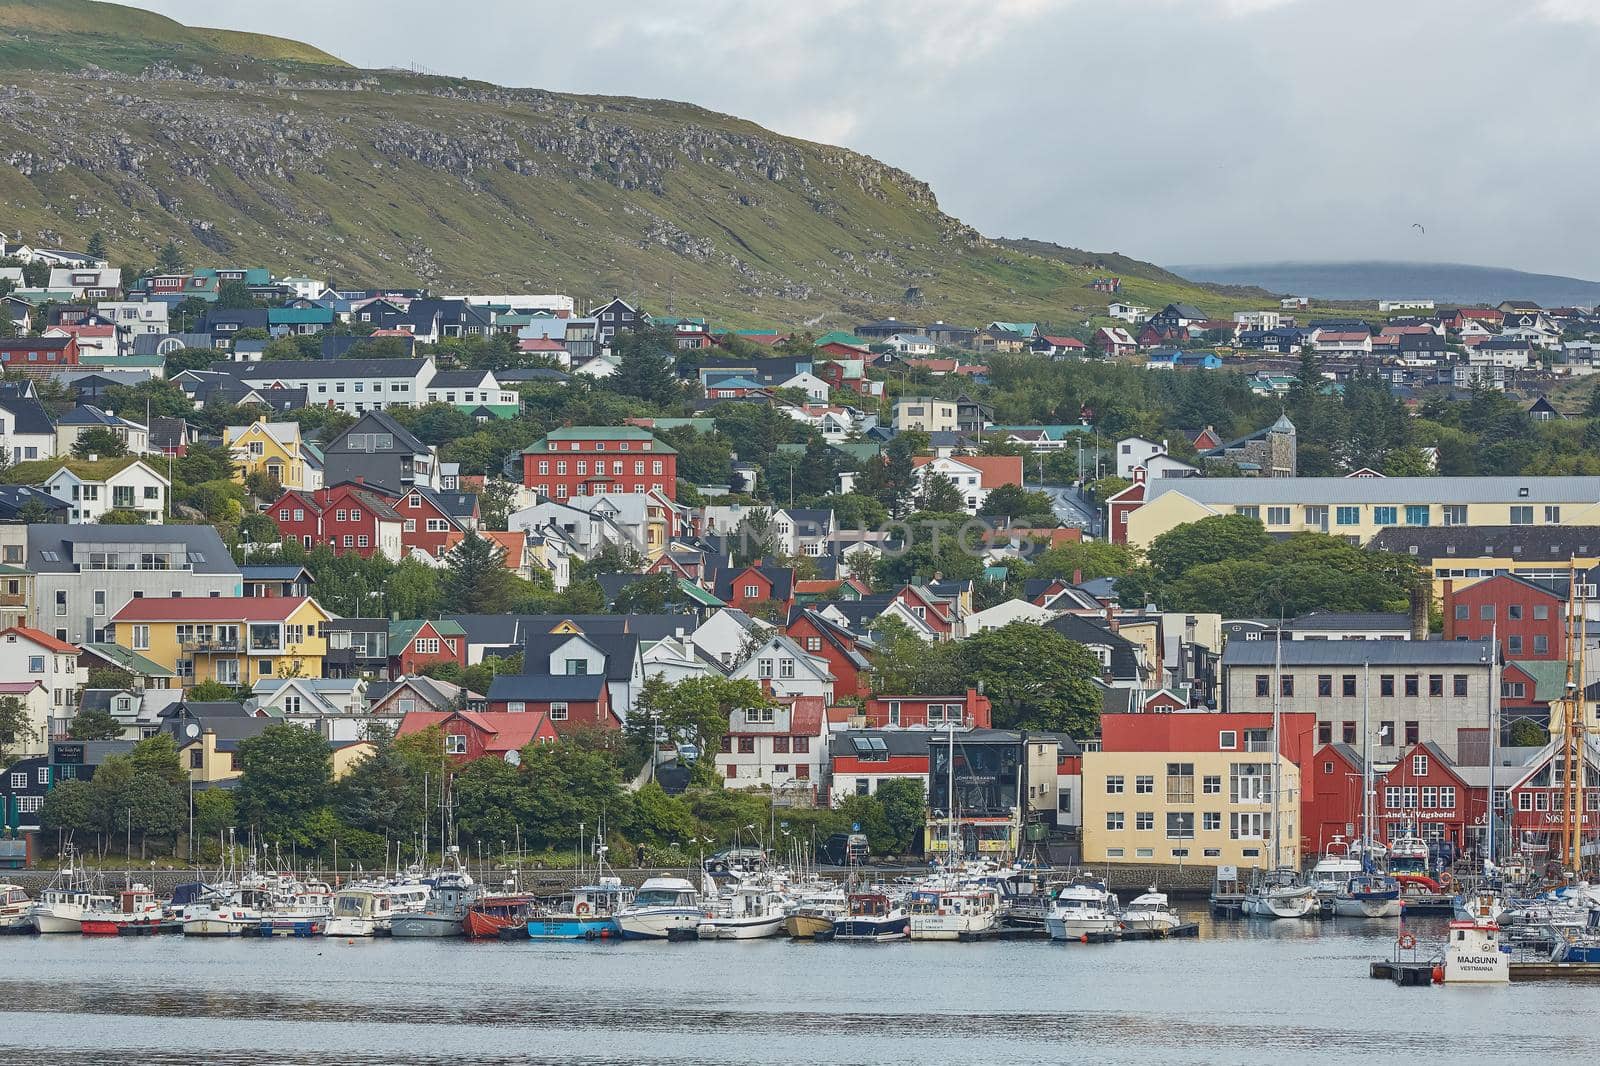 TORSHAWN, FAROE ISLANDS, DENMARK - AUGUST 21, 2018: View of the downtown of Torshawn, the capital town of Faroe Islands, Denmark.